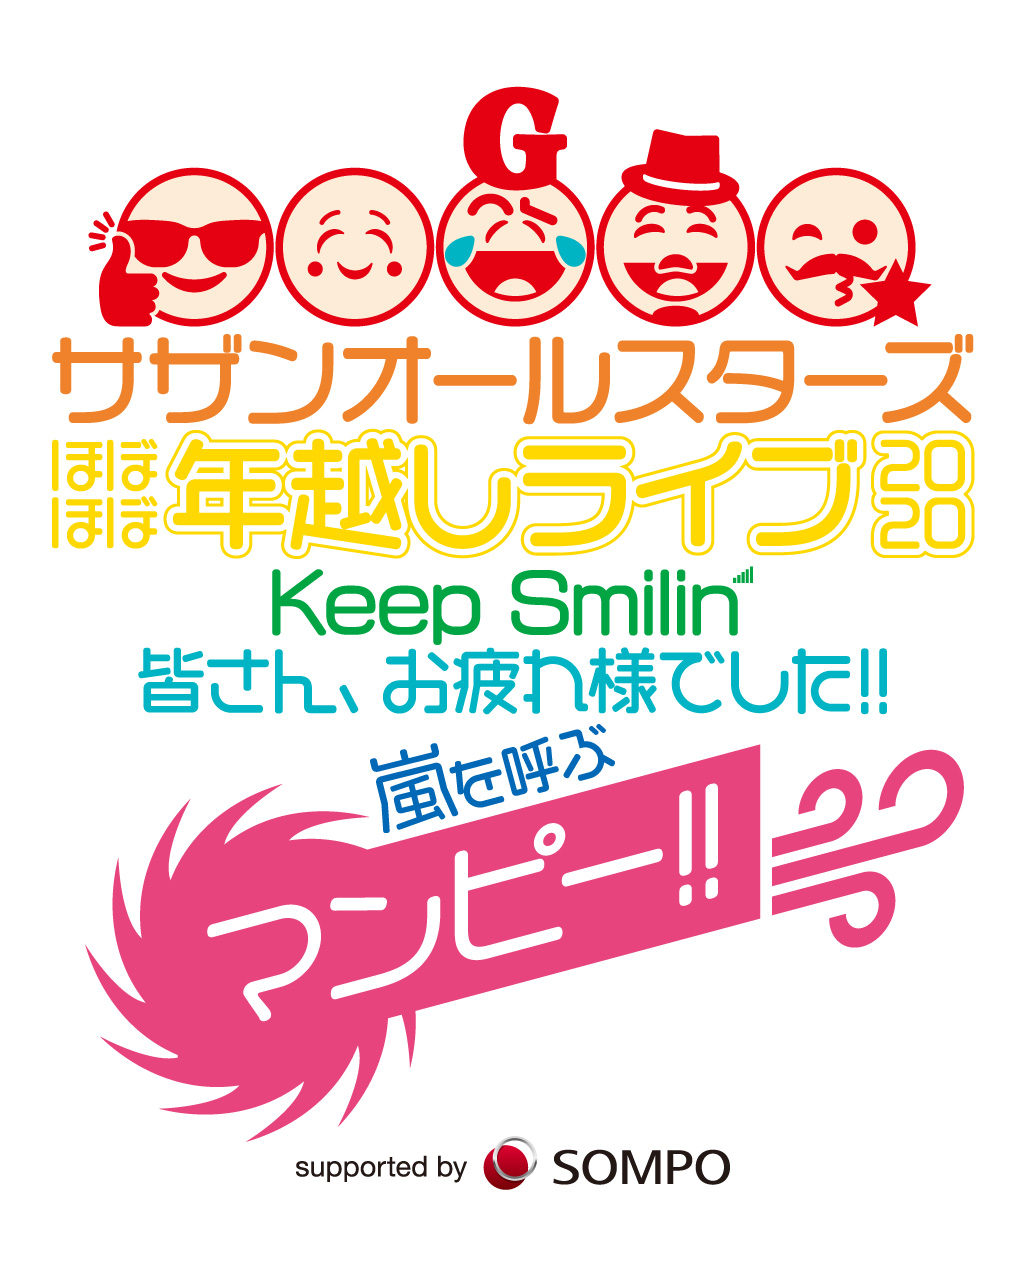 『サザンオールスターズ ほぼほぼ年越しライブ 2020 「Keep Smilin’〜皆さん、お疲れ様でした!! 嵐を呼ぶマンピー!!〜」 supported by SOMPOグループ』